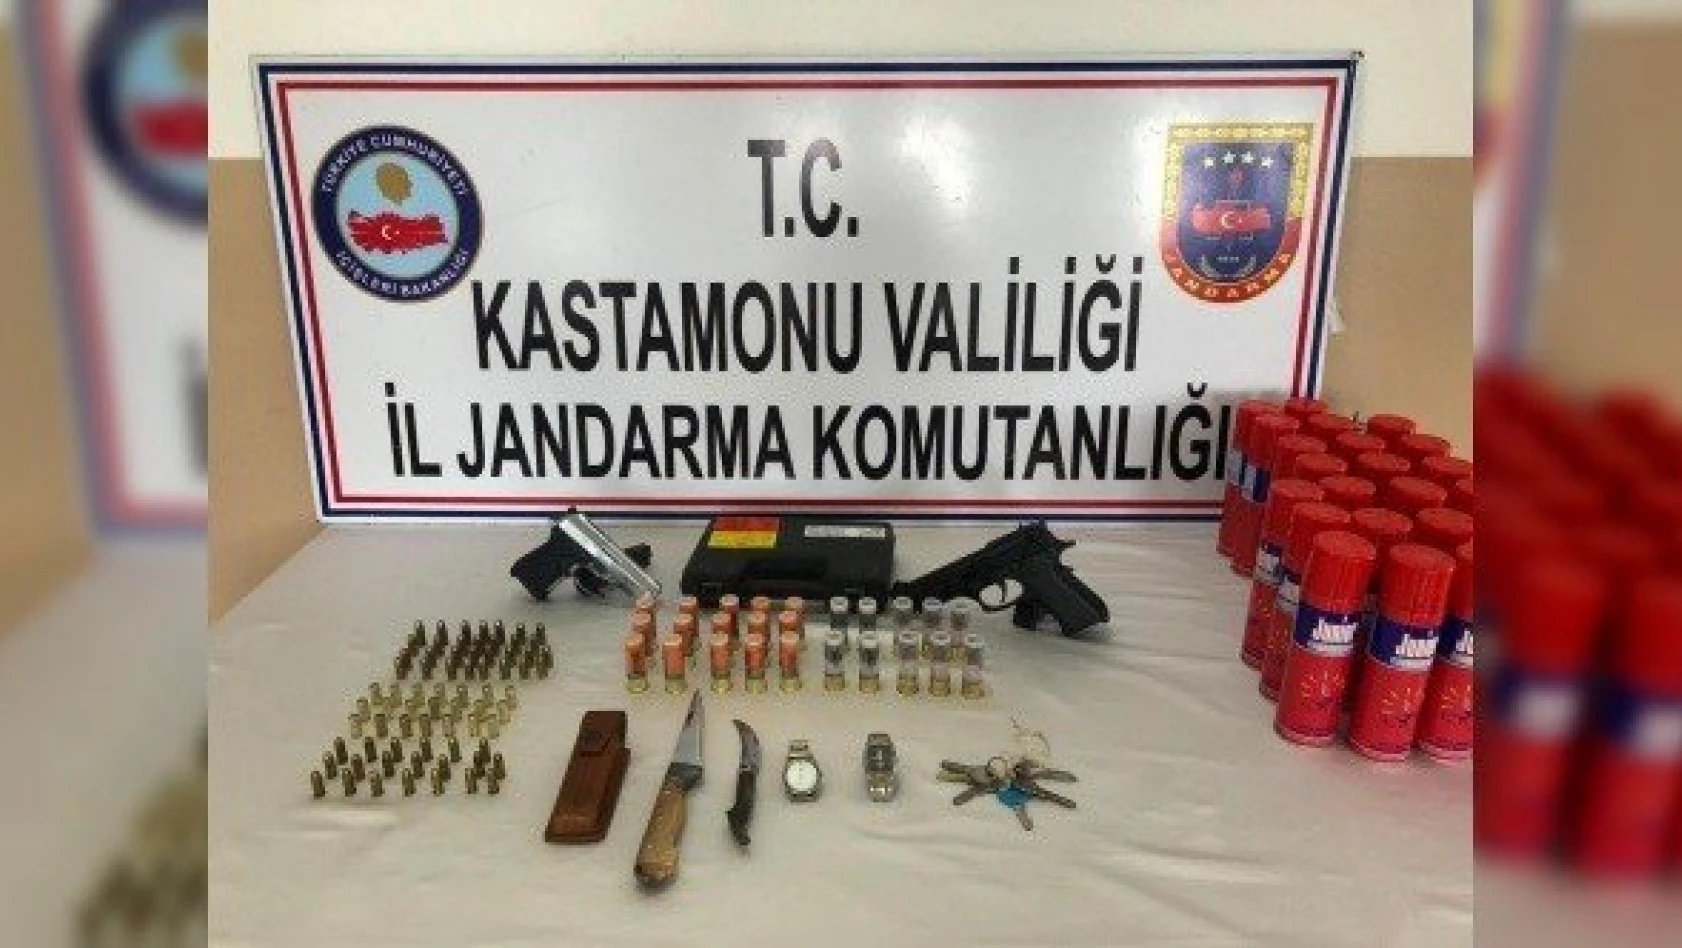 Kastamonu'da çaldığı silahları tabutta saklayan kişi tutuklandı